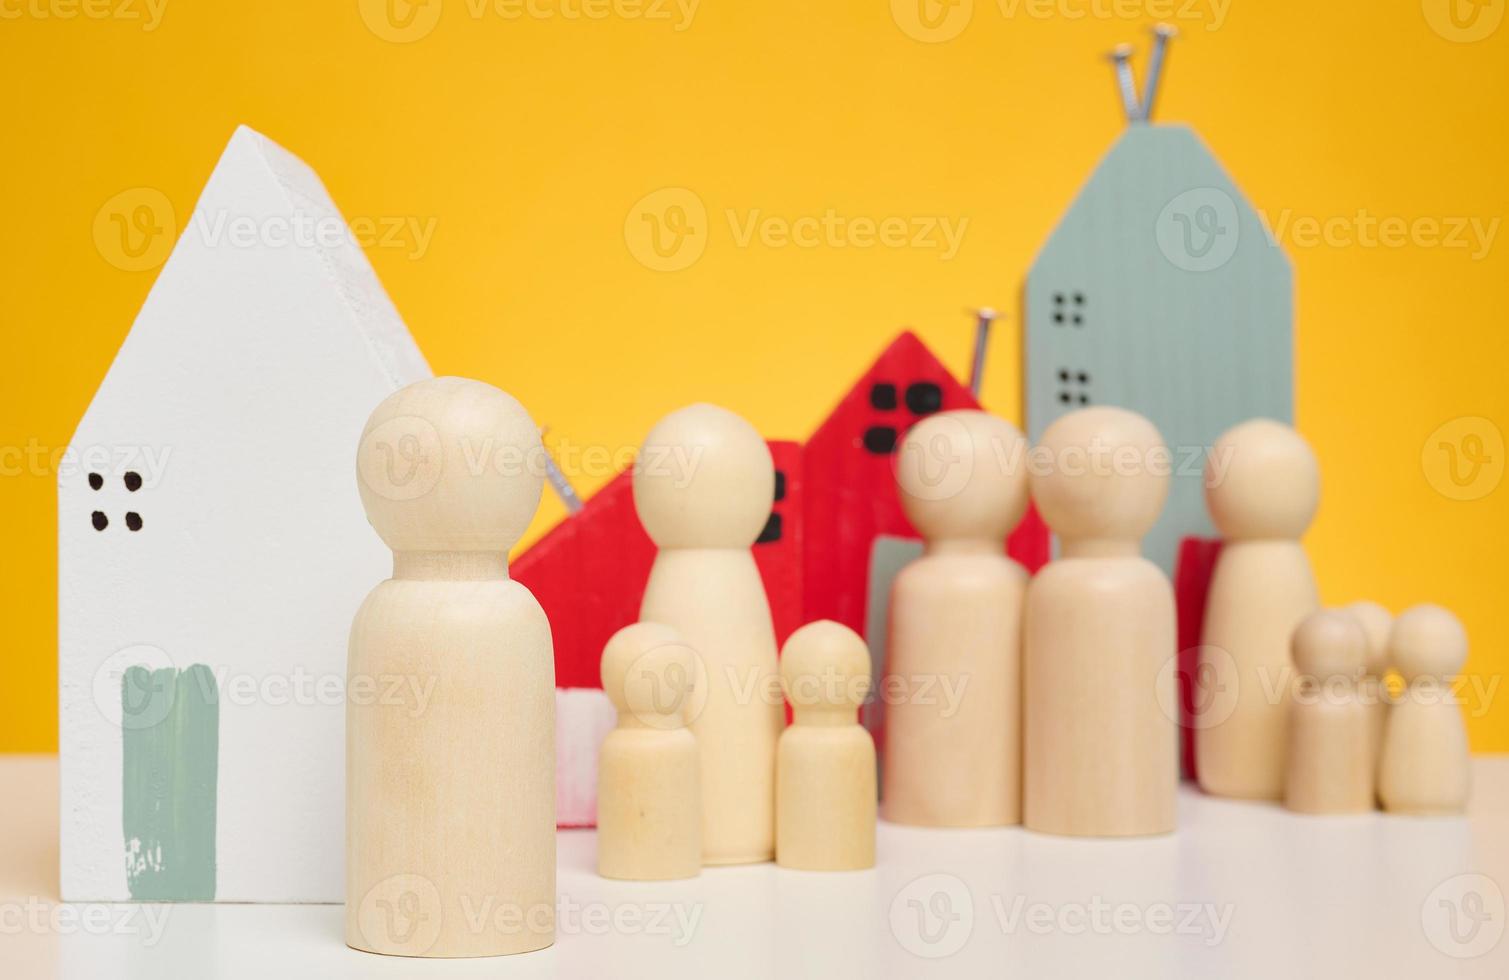 casa de madeira e estatuetas em miniatura de uma família e um corretor de imóveis em um fundo amarelo. o conceito de venda e compra de imóveis, investimento foto